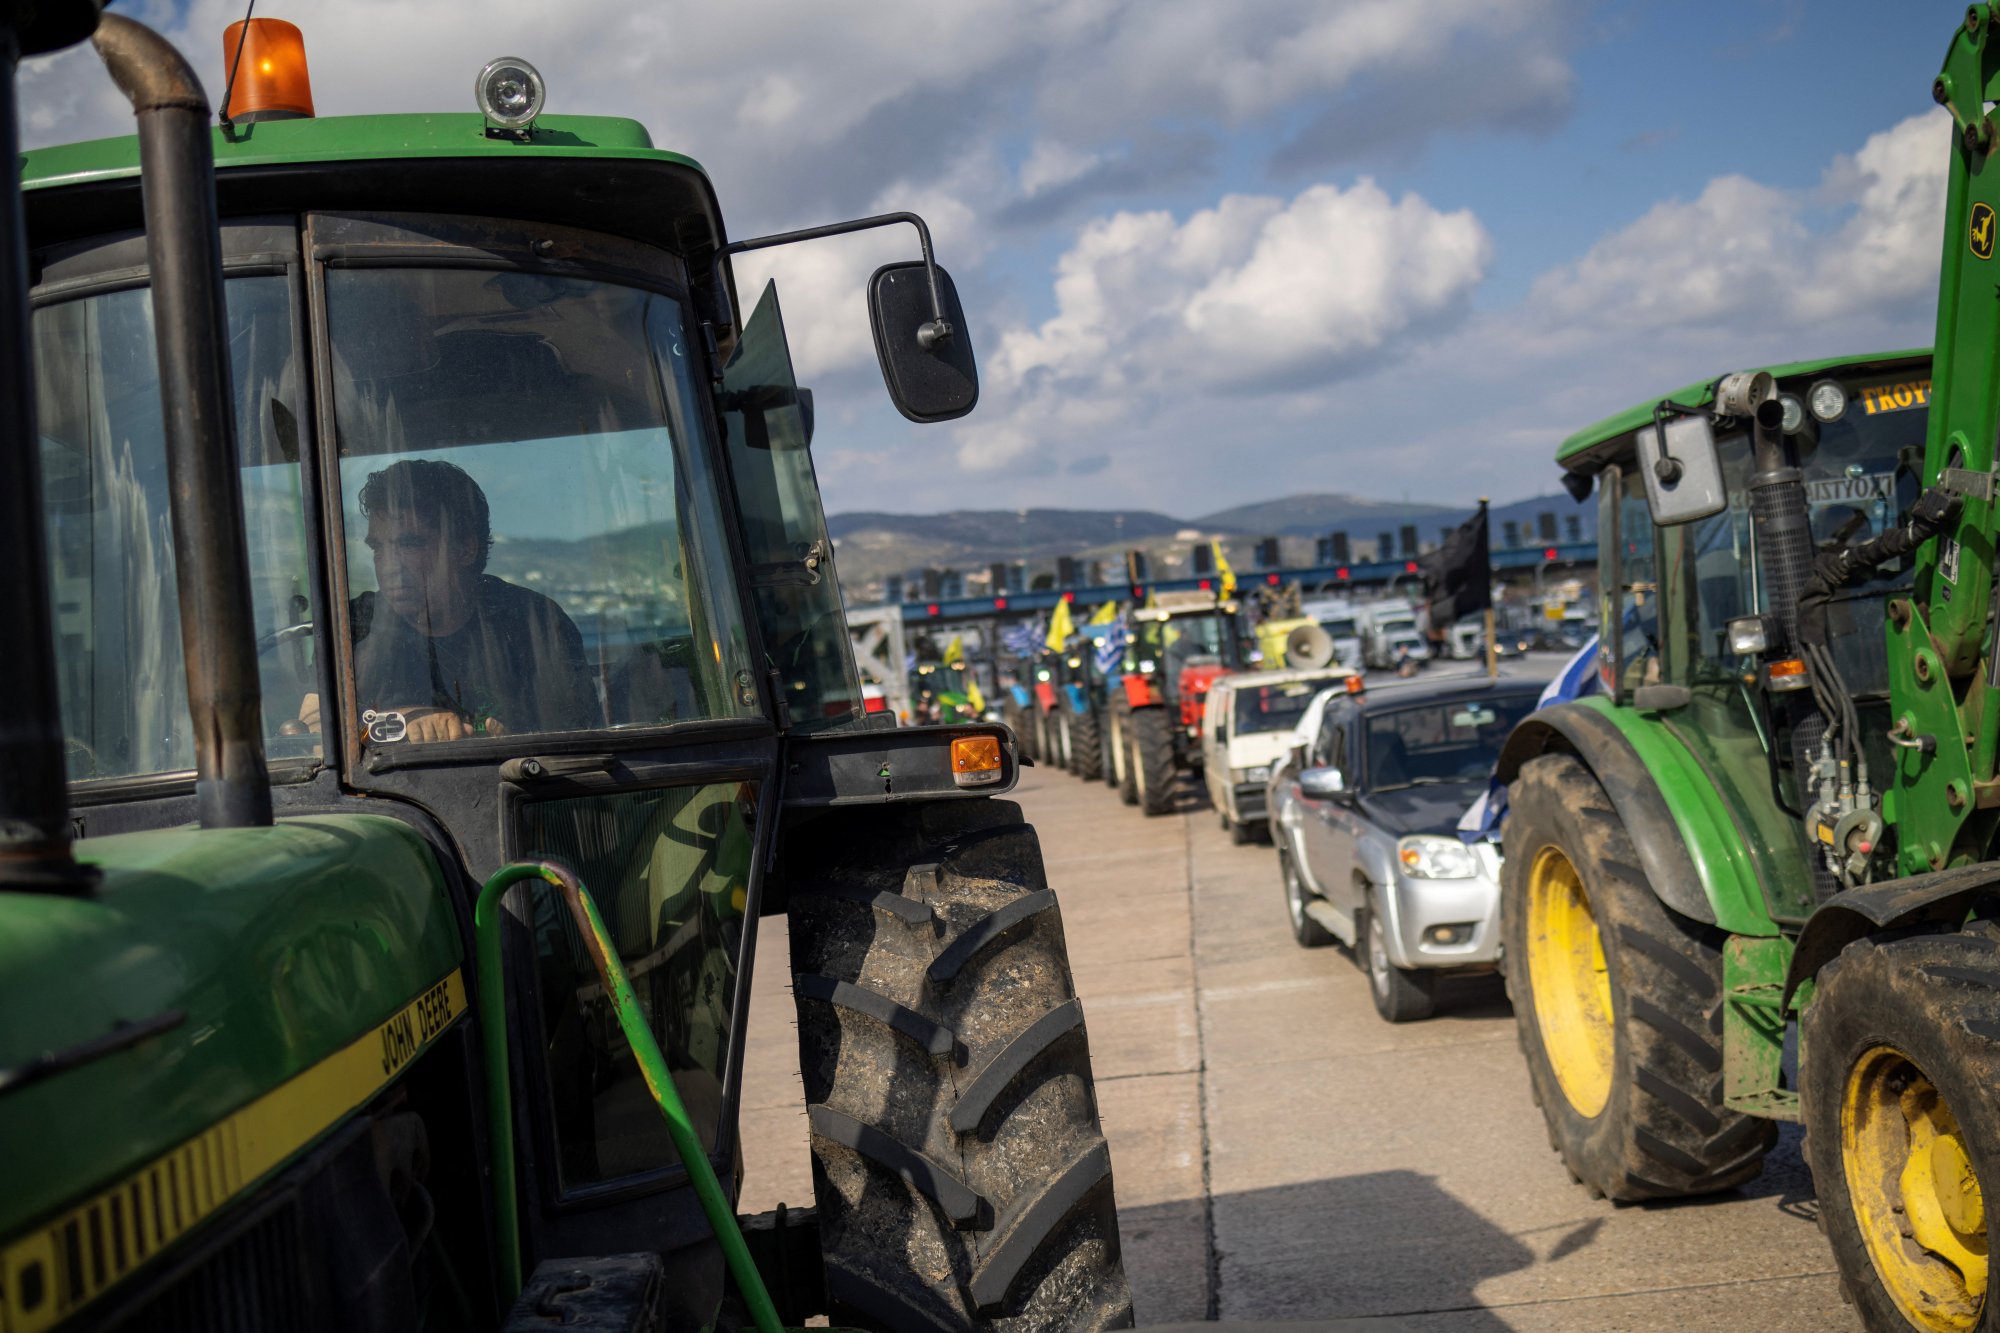 Σε αδιέξοδο οι αγρότες στην Ευρώπη - Μονόδρομος ο αγώνας